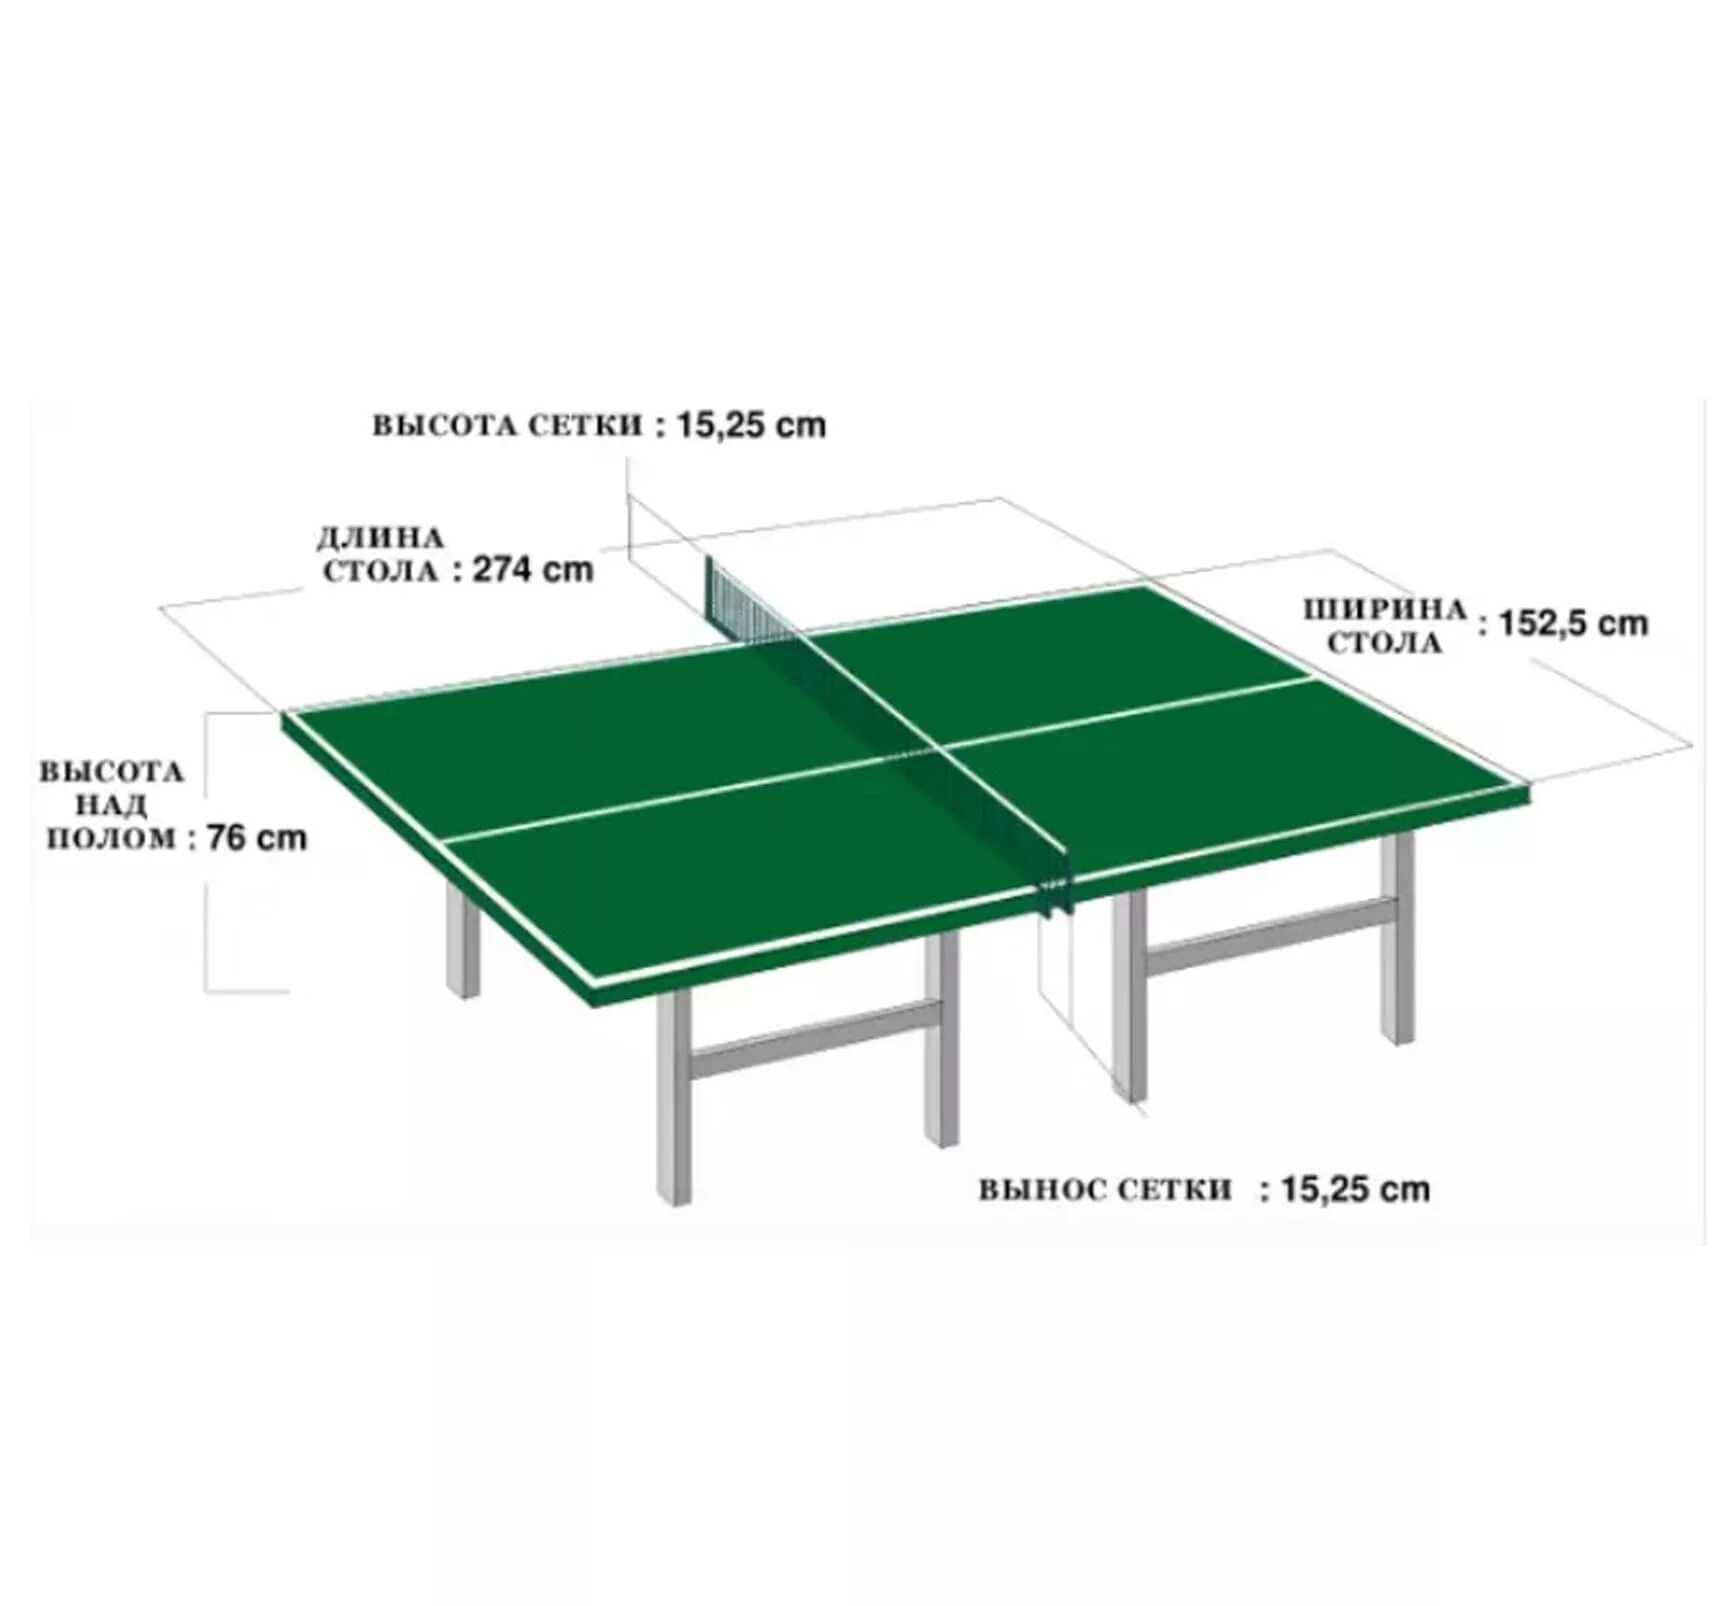 Стандартный размер теннисного. Размеры стола для настольного тенниса. Высота теннисного стола для настольного тенниса. Размеры теннисного стола для настольного тенниса стандарт. Разметка теннисного стола толщина линий.